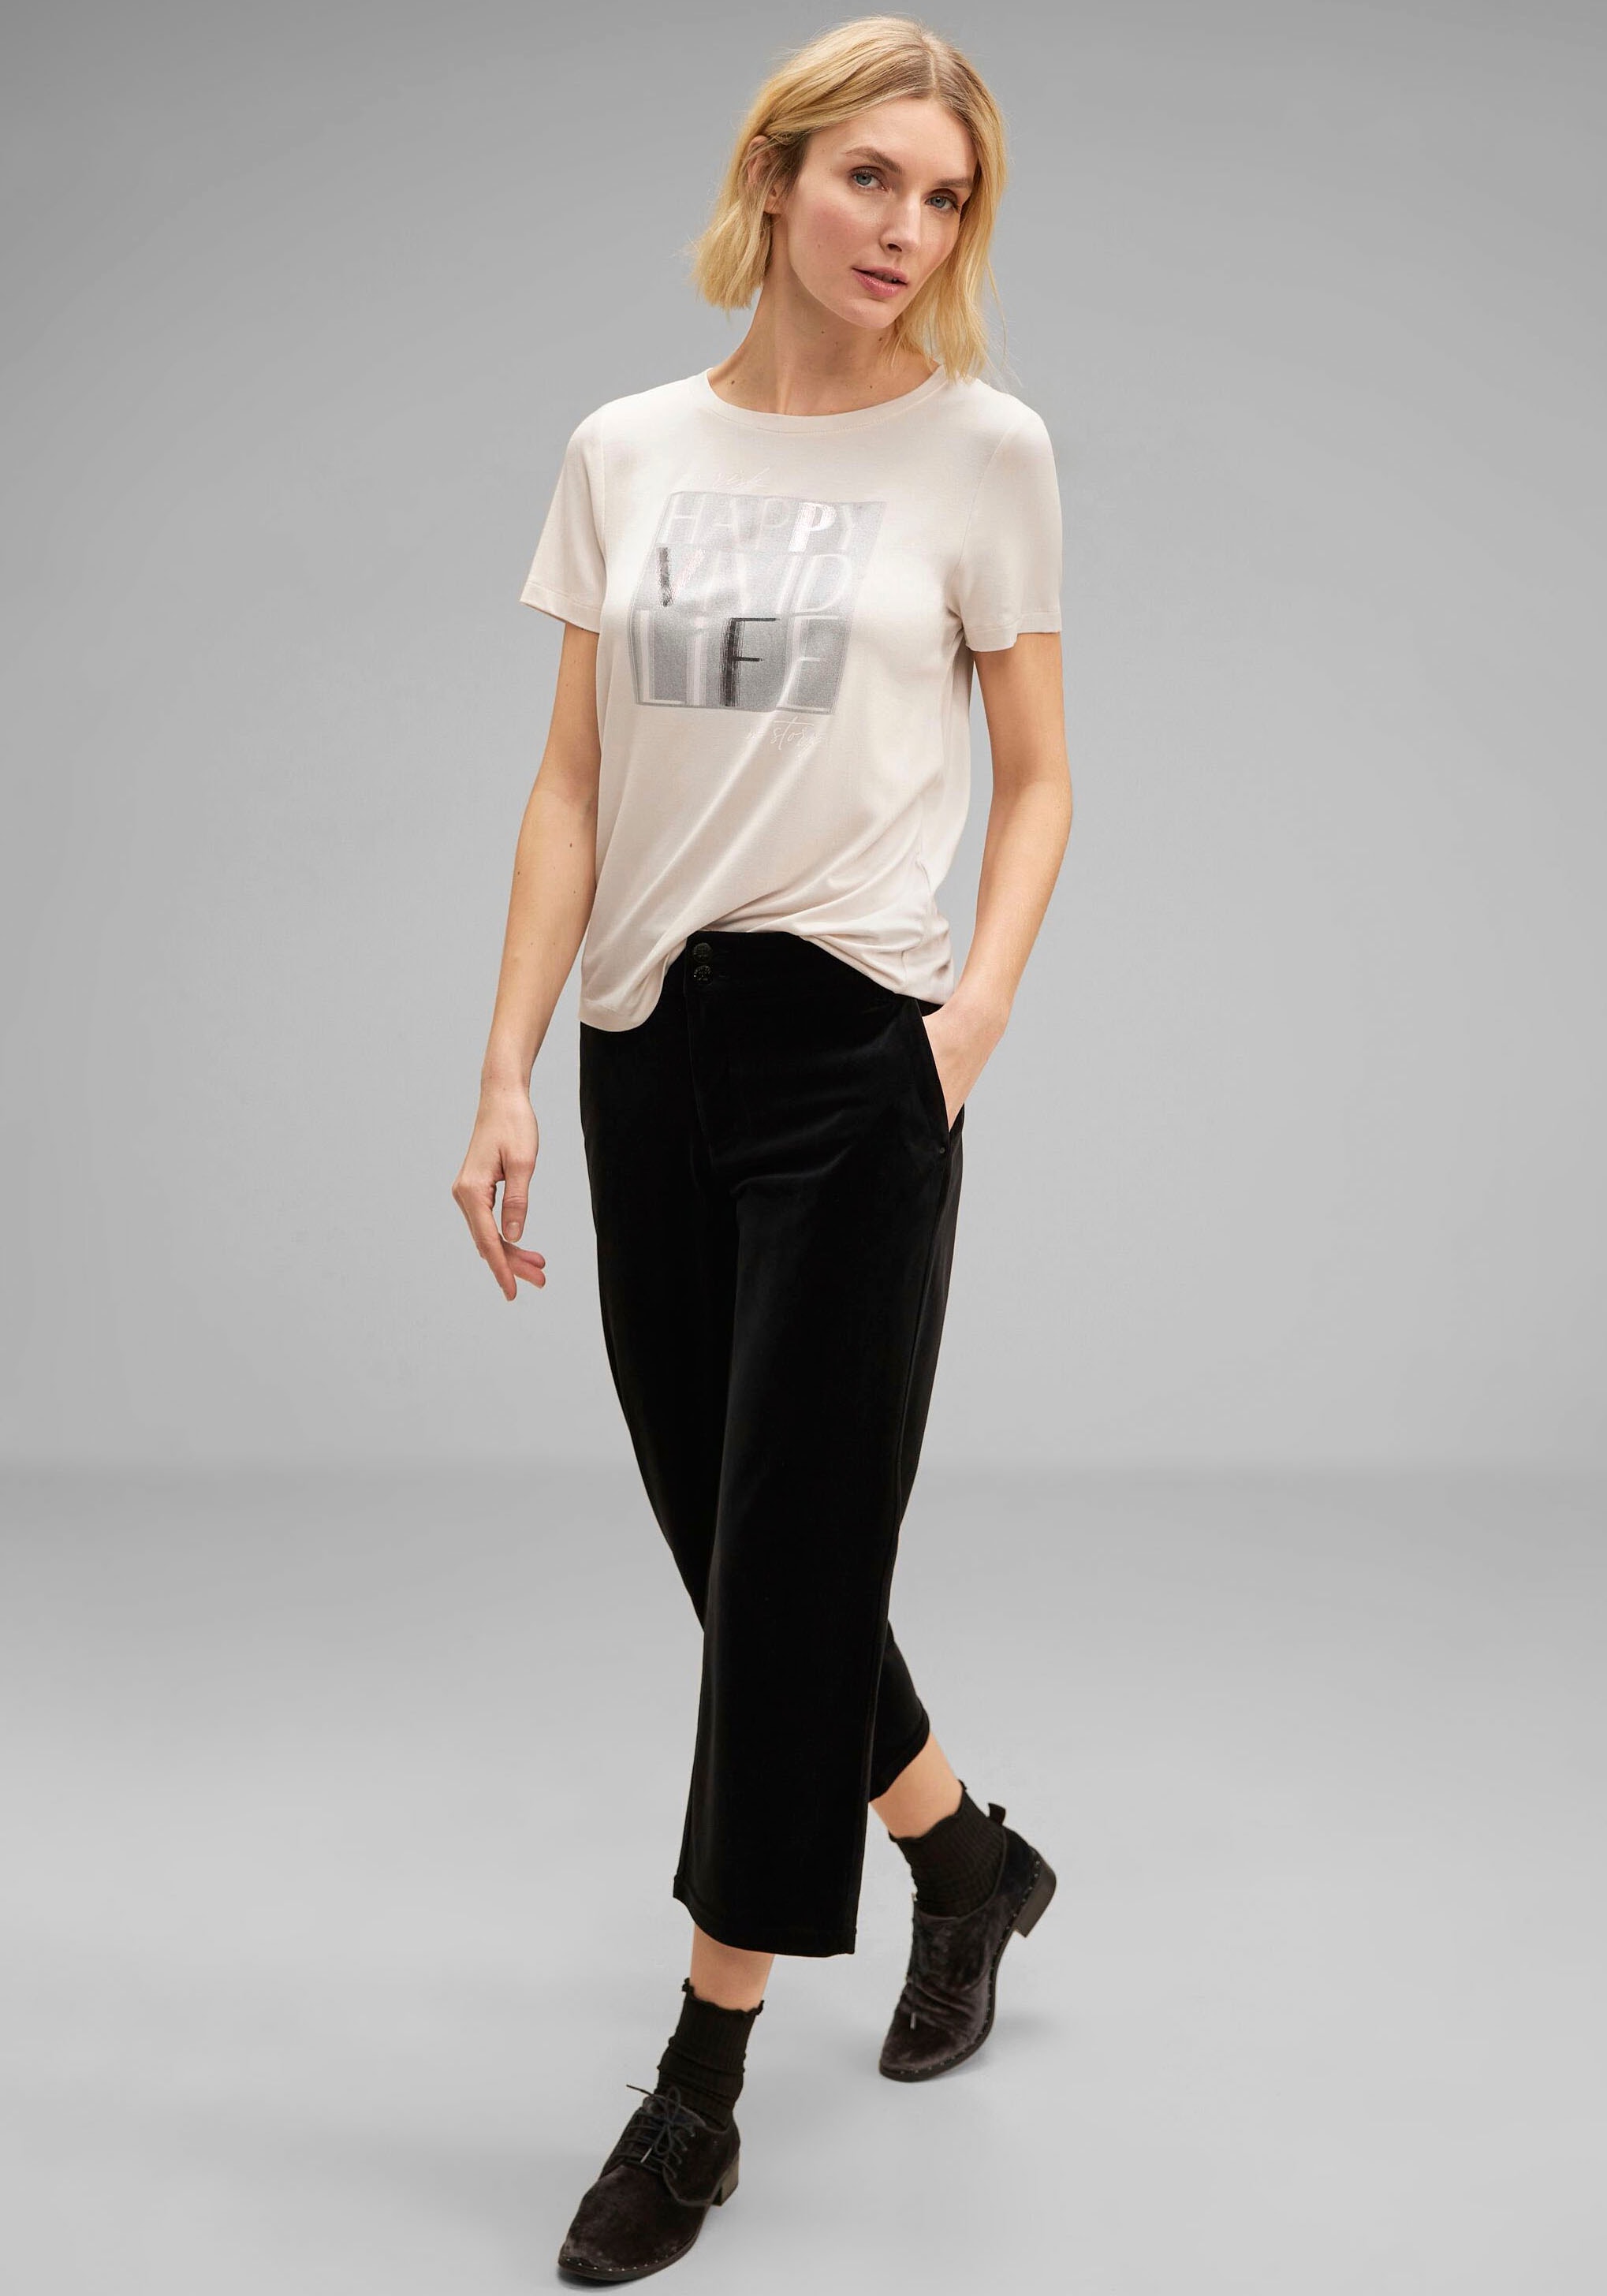 ONE STREET Schweiz online glitzerndem T-Shirt, kaufen Frontprint mit Jelmoli-Versand bei